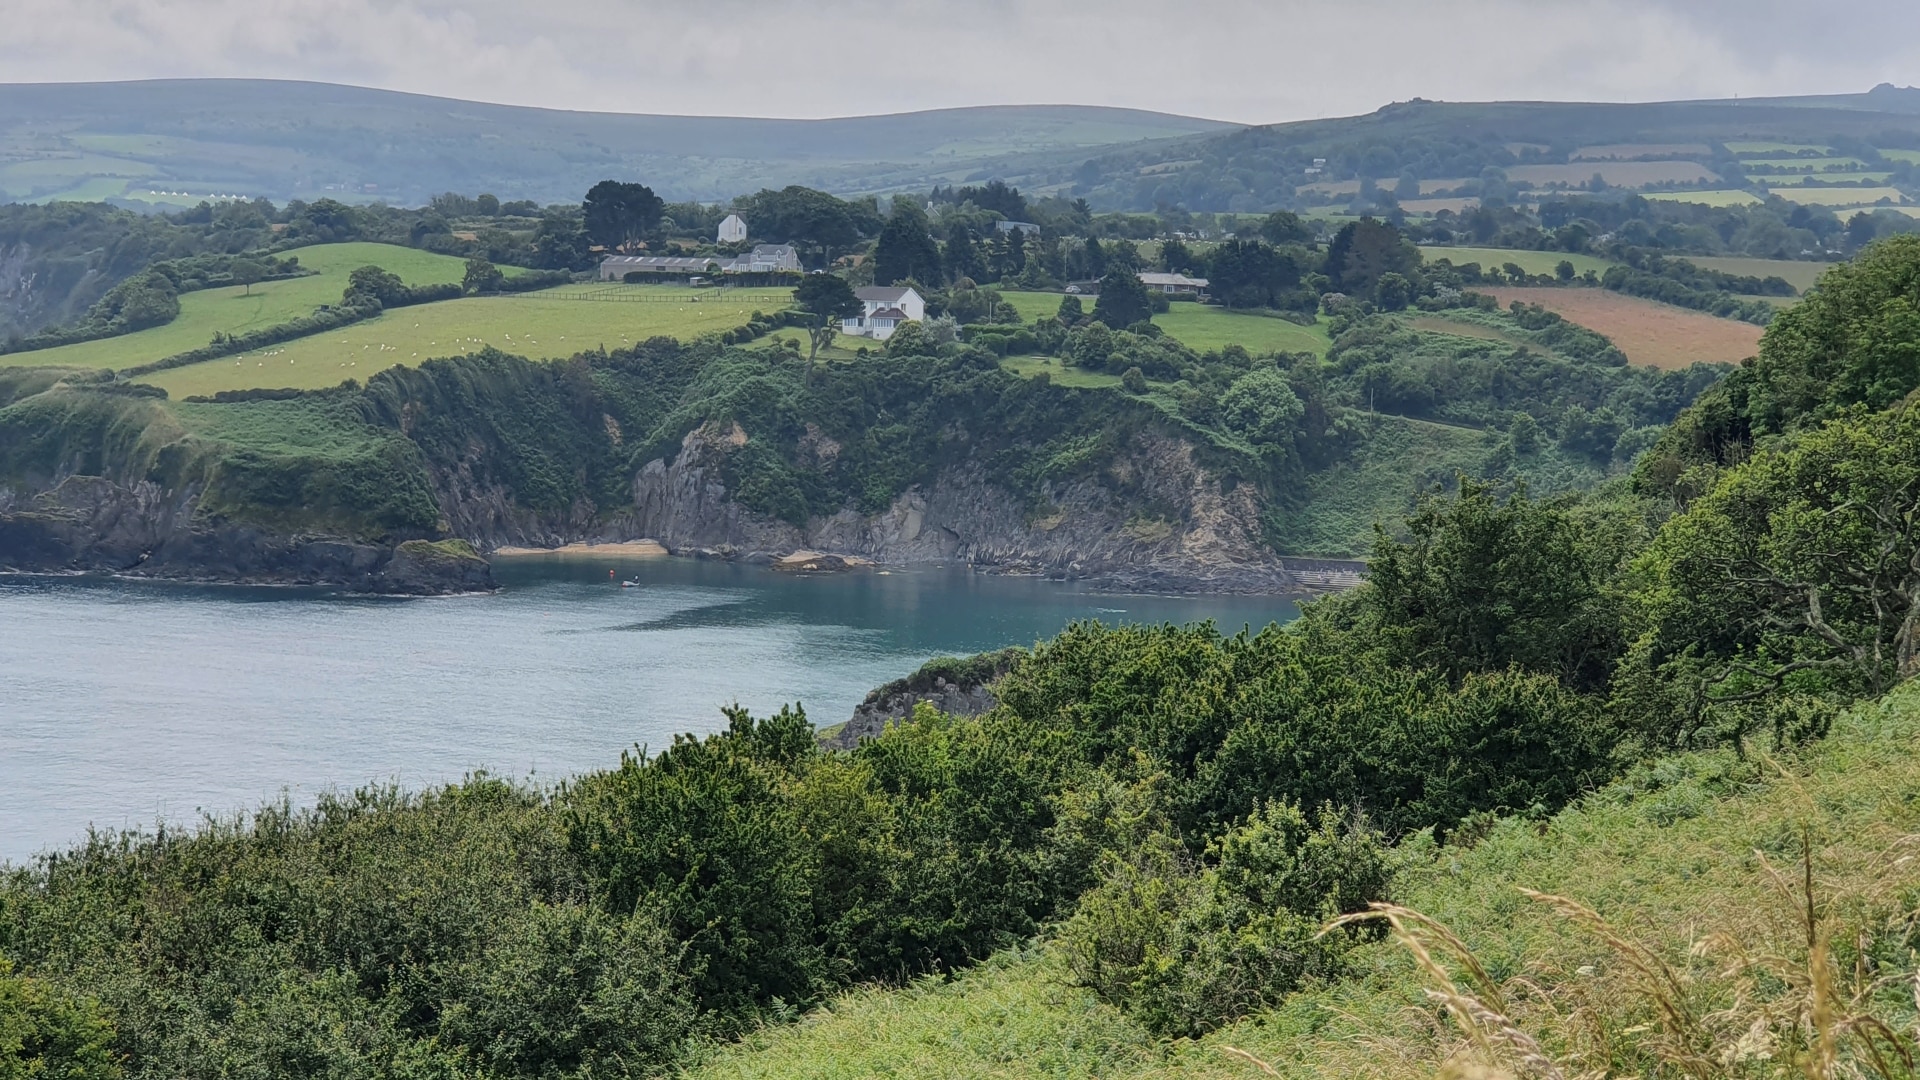 Dinas Head Coastal Walk - Glorious Views